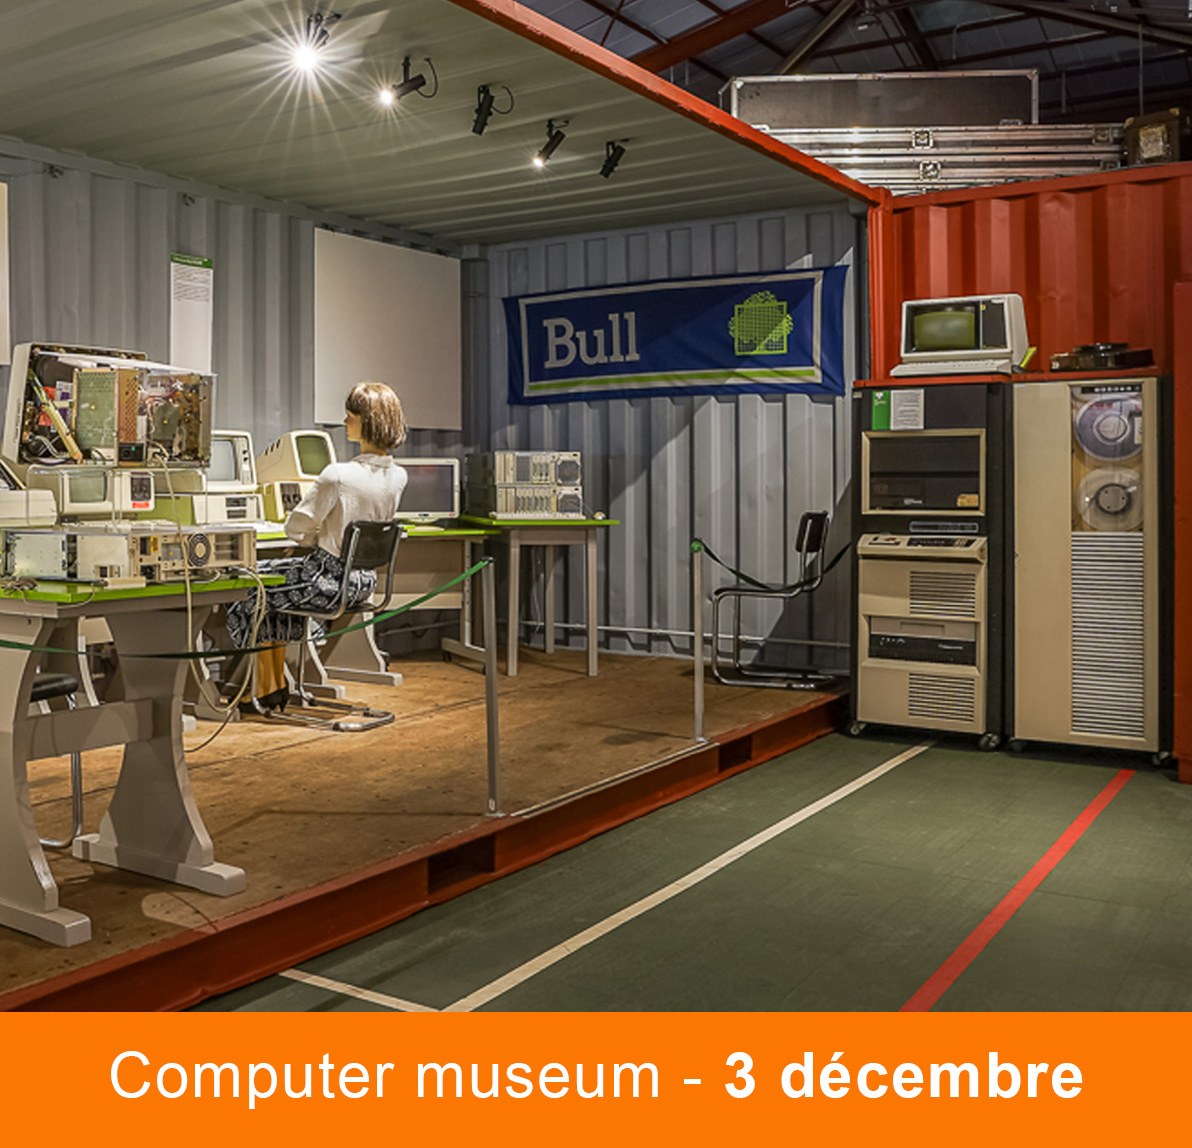 Computer museum - 3 décembre